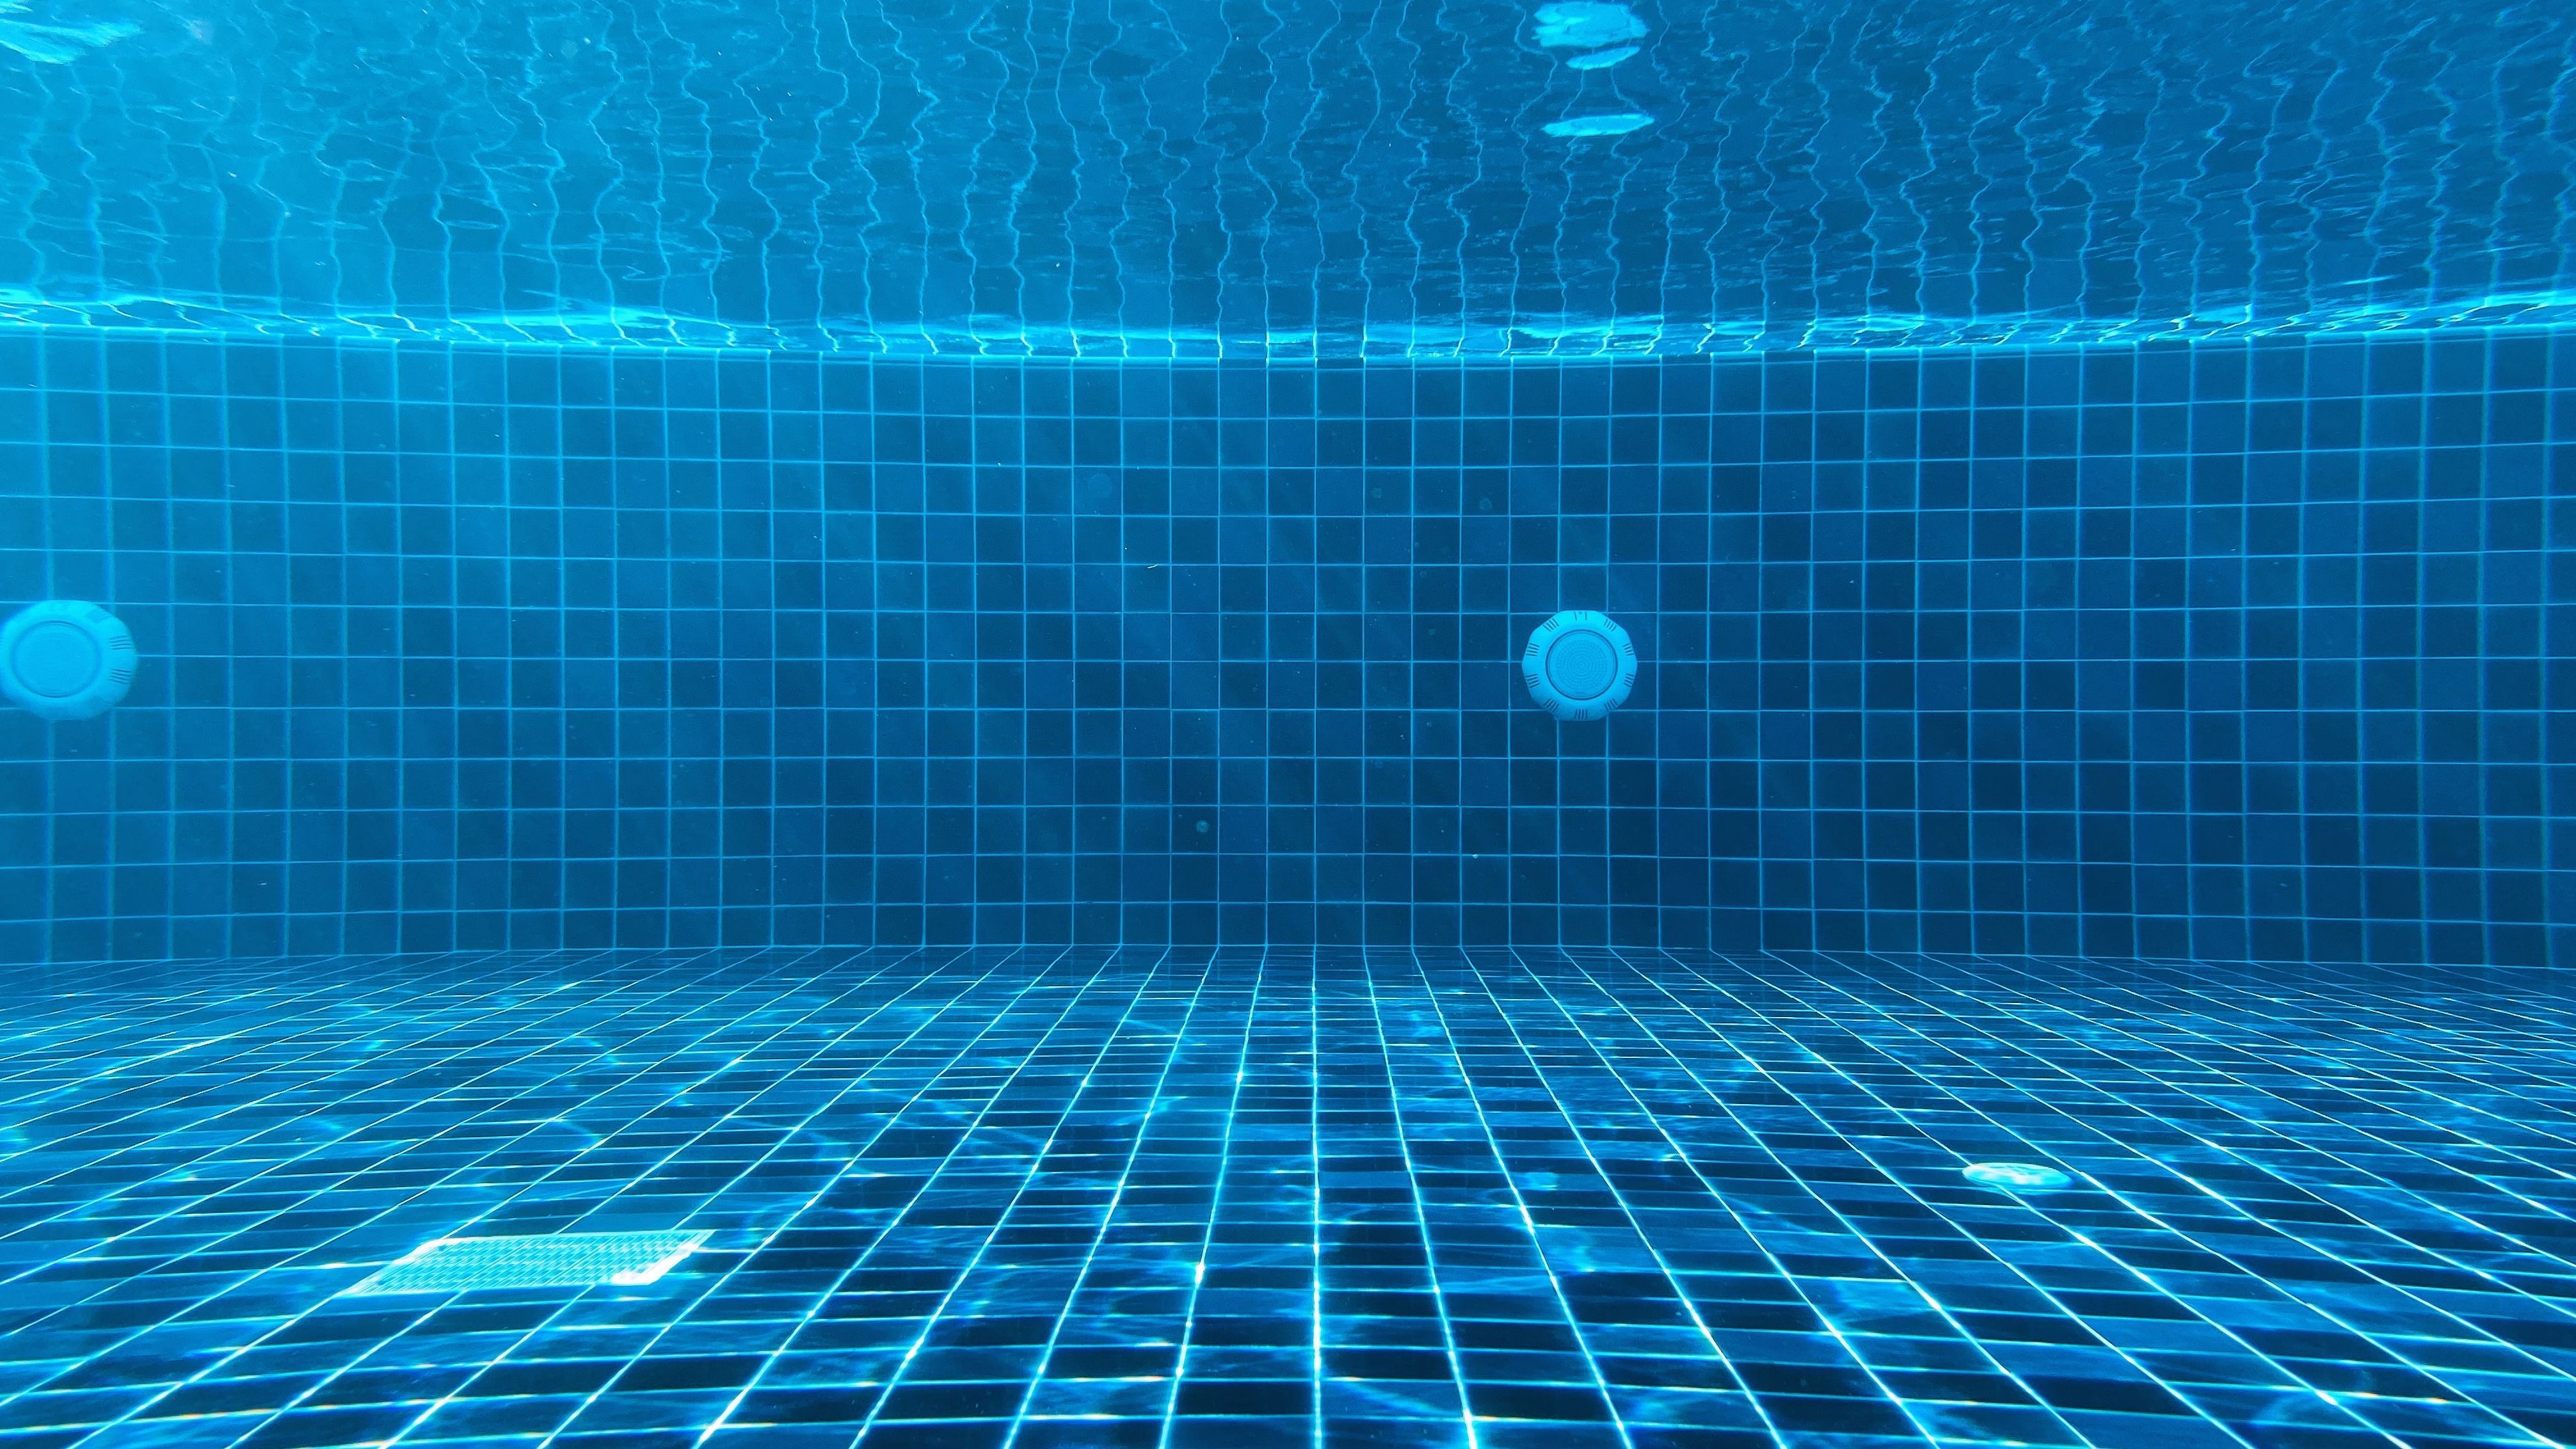 Cómo limpiar el fondo de una piscina sin limpiafondos  Descubre estas  técnicas y trucos efectivos